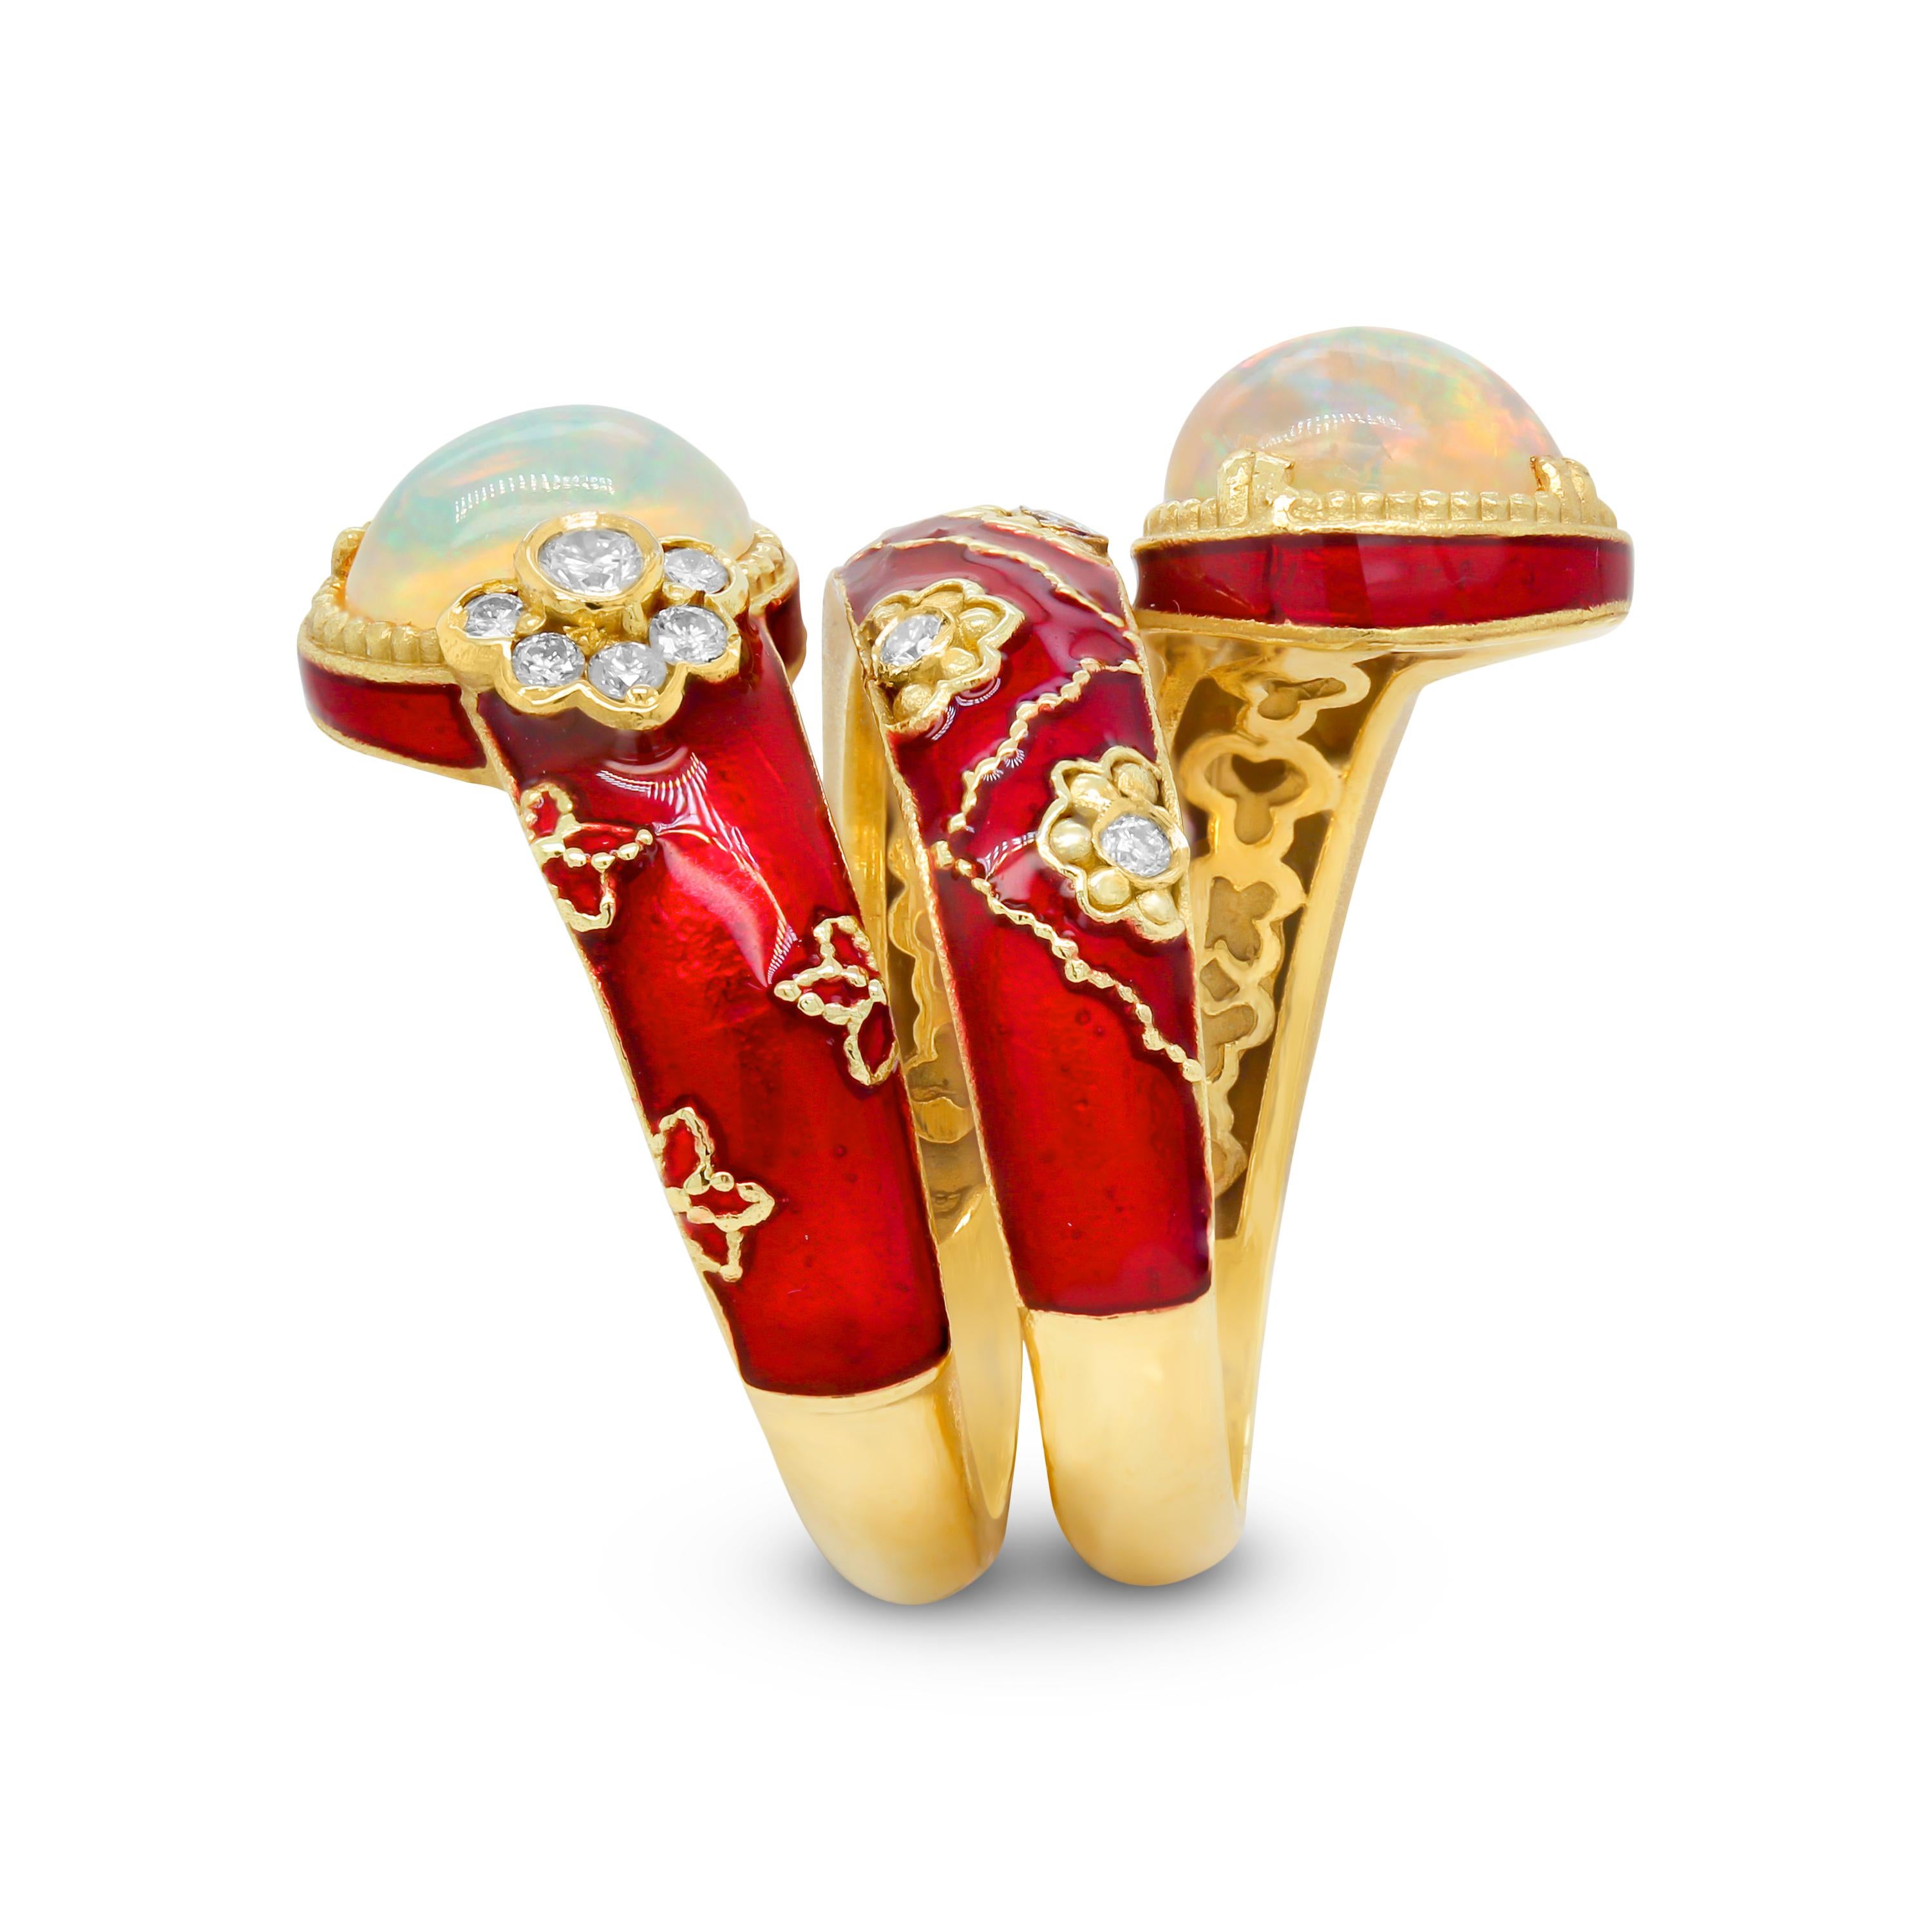 Stambolian, bague large en or 18 carats, émail rouge, diamants, opales d'Éthiopie torsadées

Issue de la collection Stambolian 